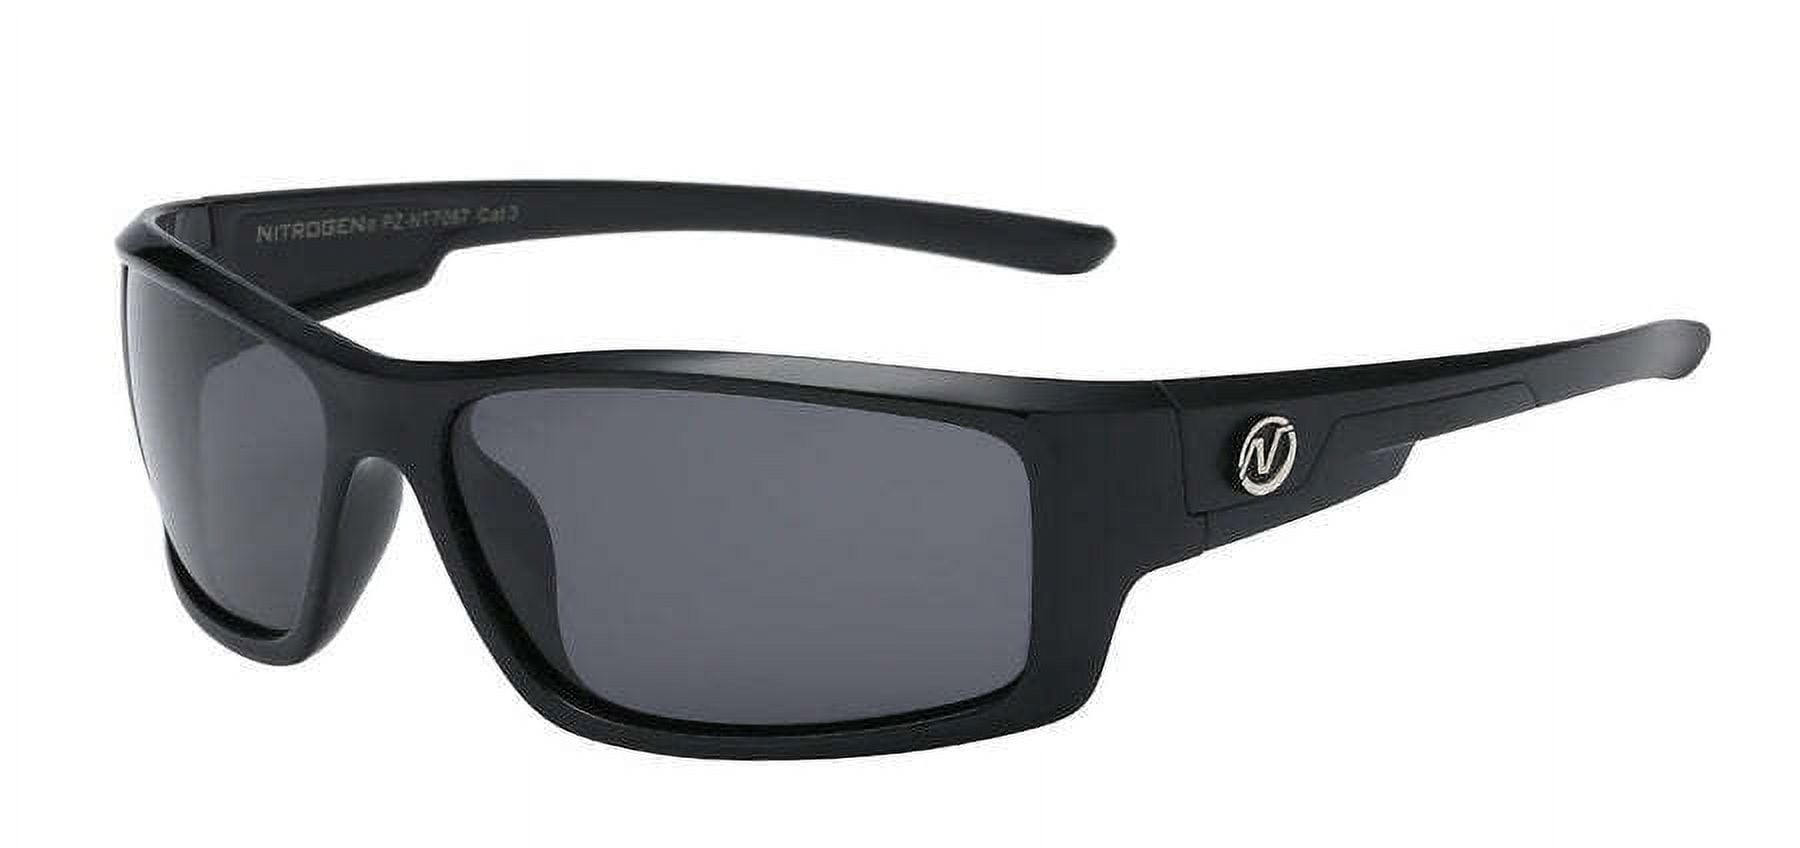 Nitrogen Polarized Sunglasses Mens Sport Running Fishing Golfing Driving  Glasses